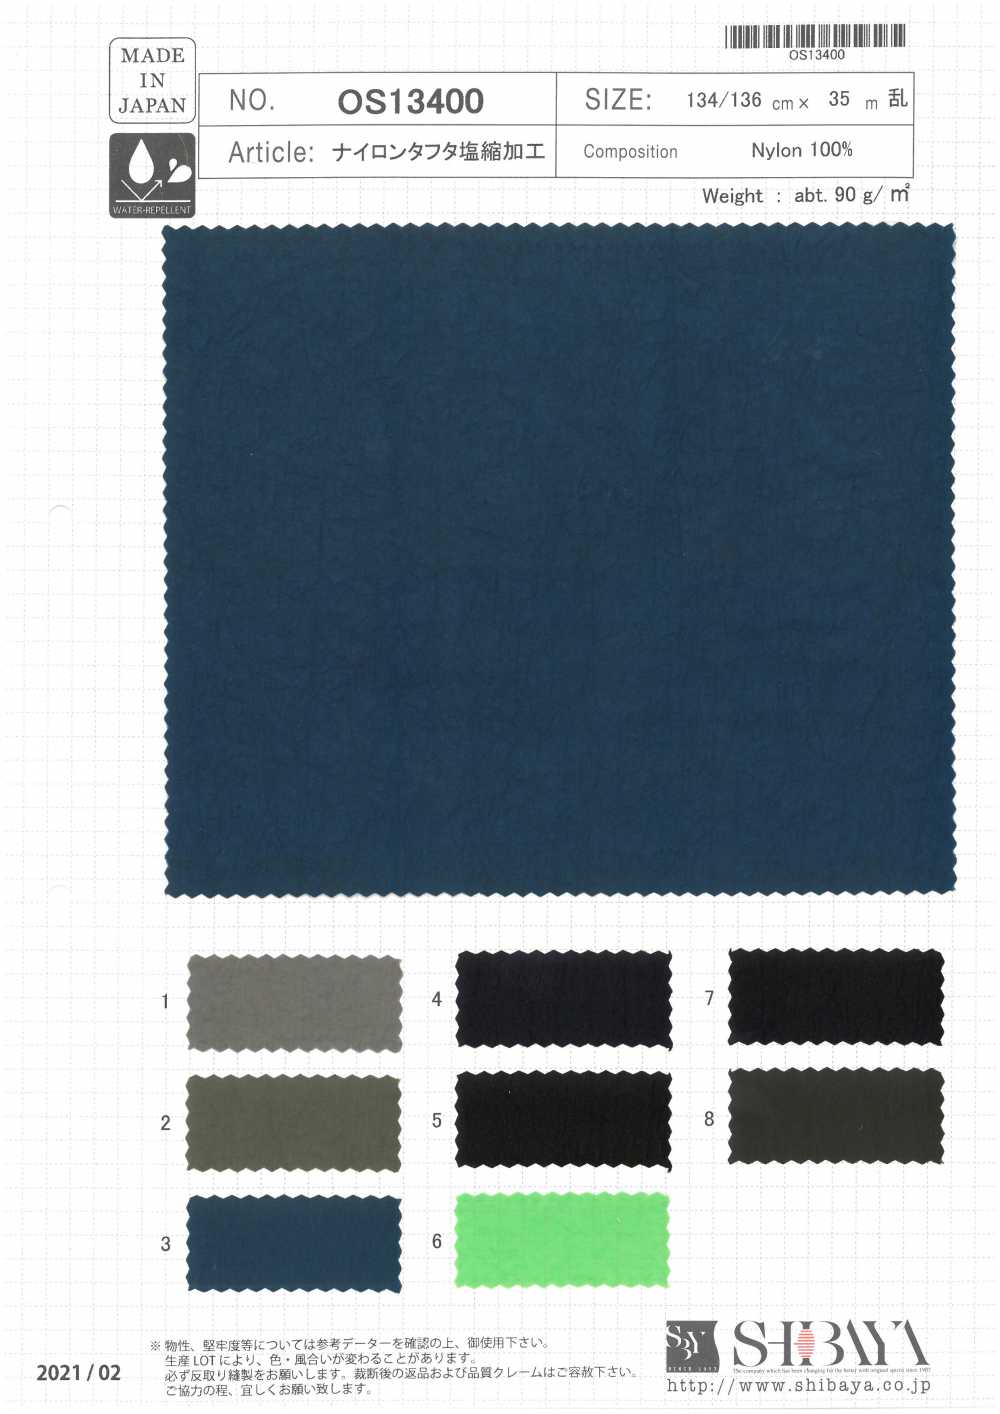 OS13400 Processamento Retrátil De Sal De Tafetá De Nylon[Têxtil / Tecido] SHIBAYA